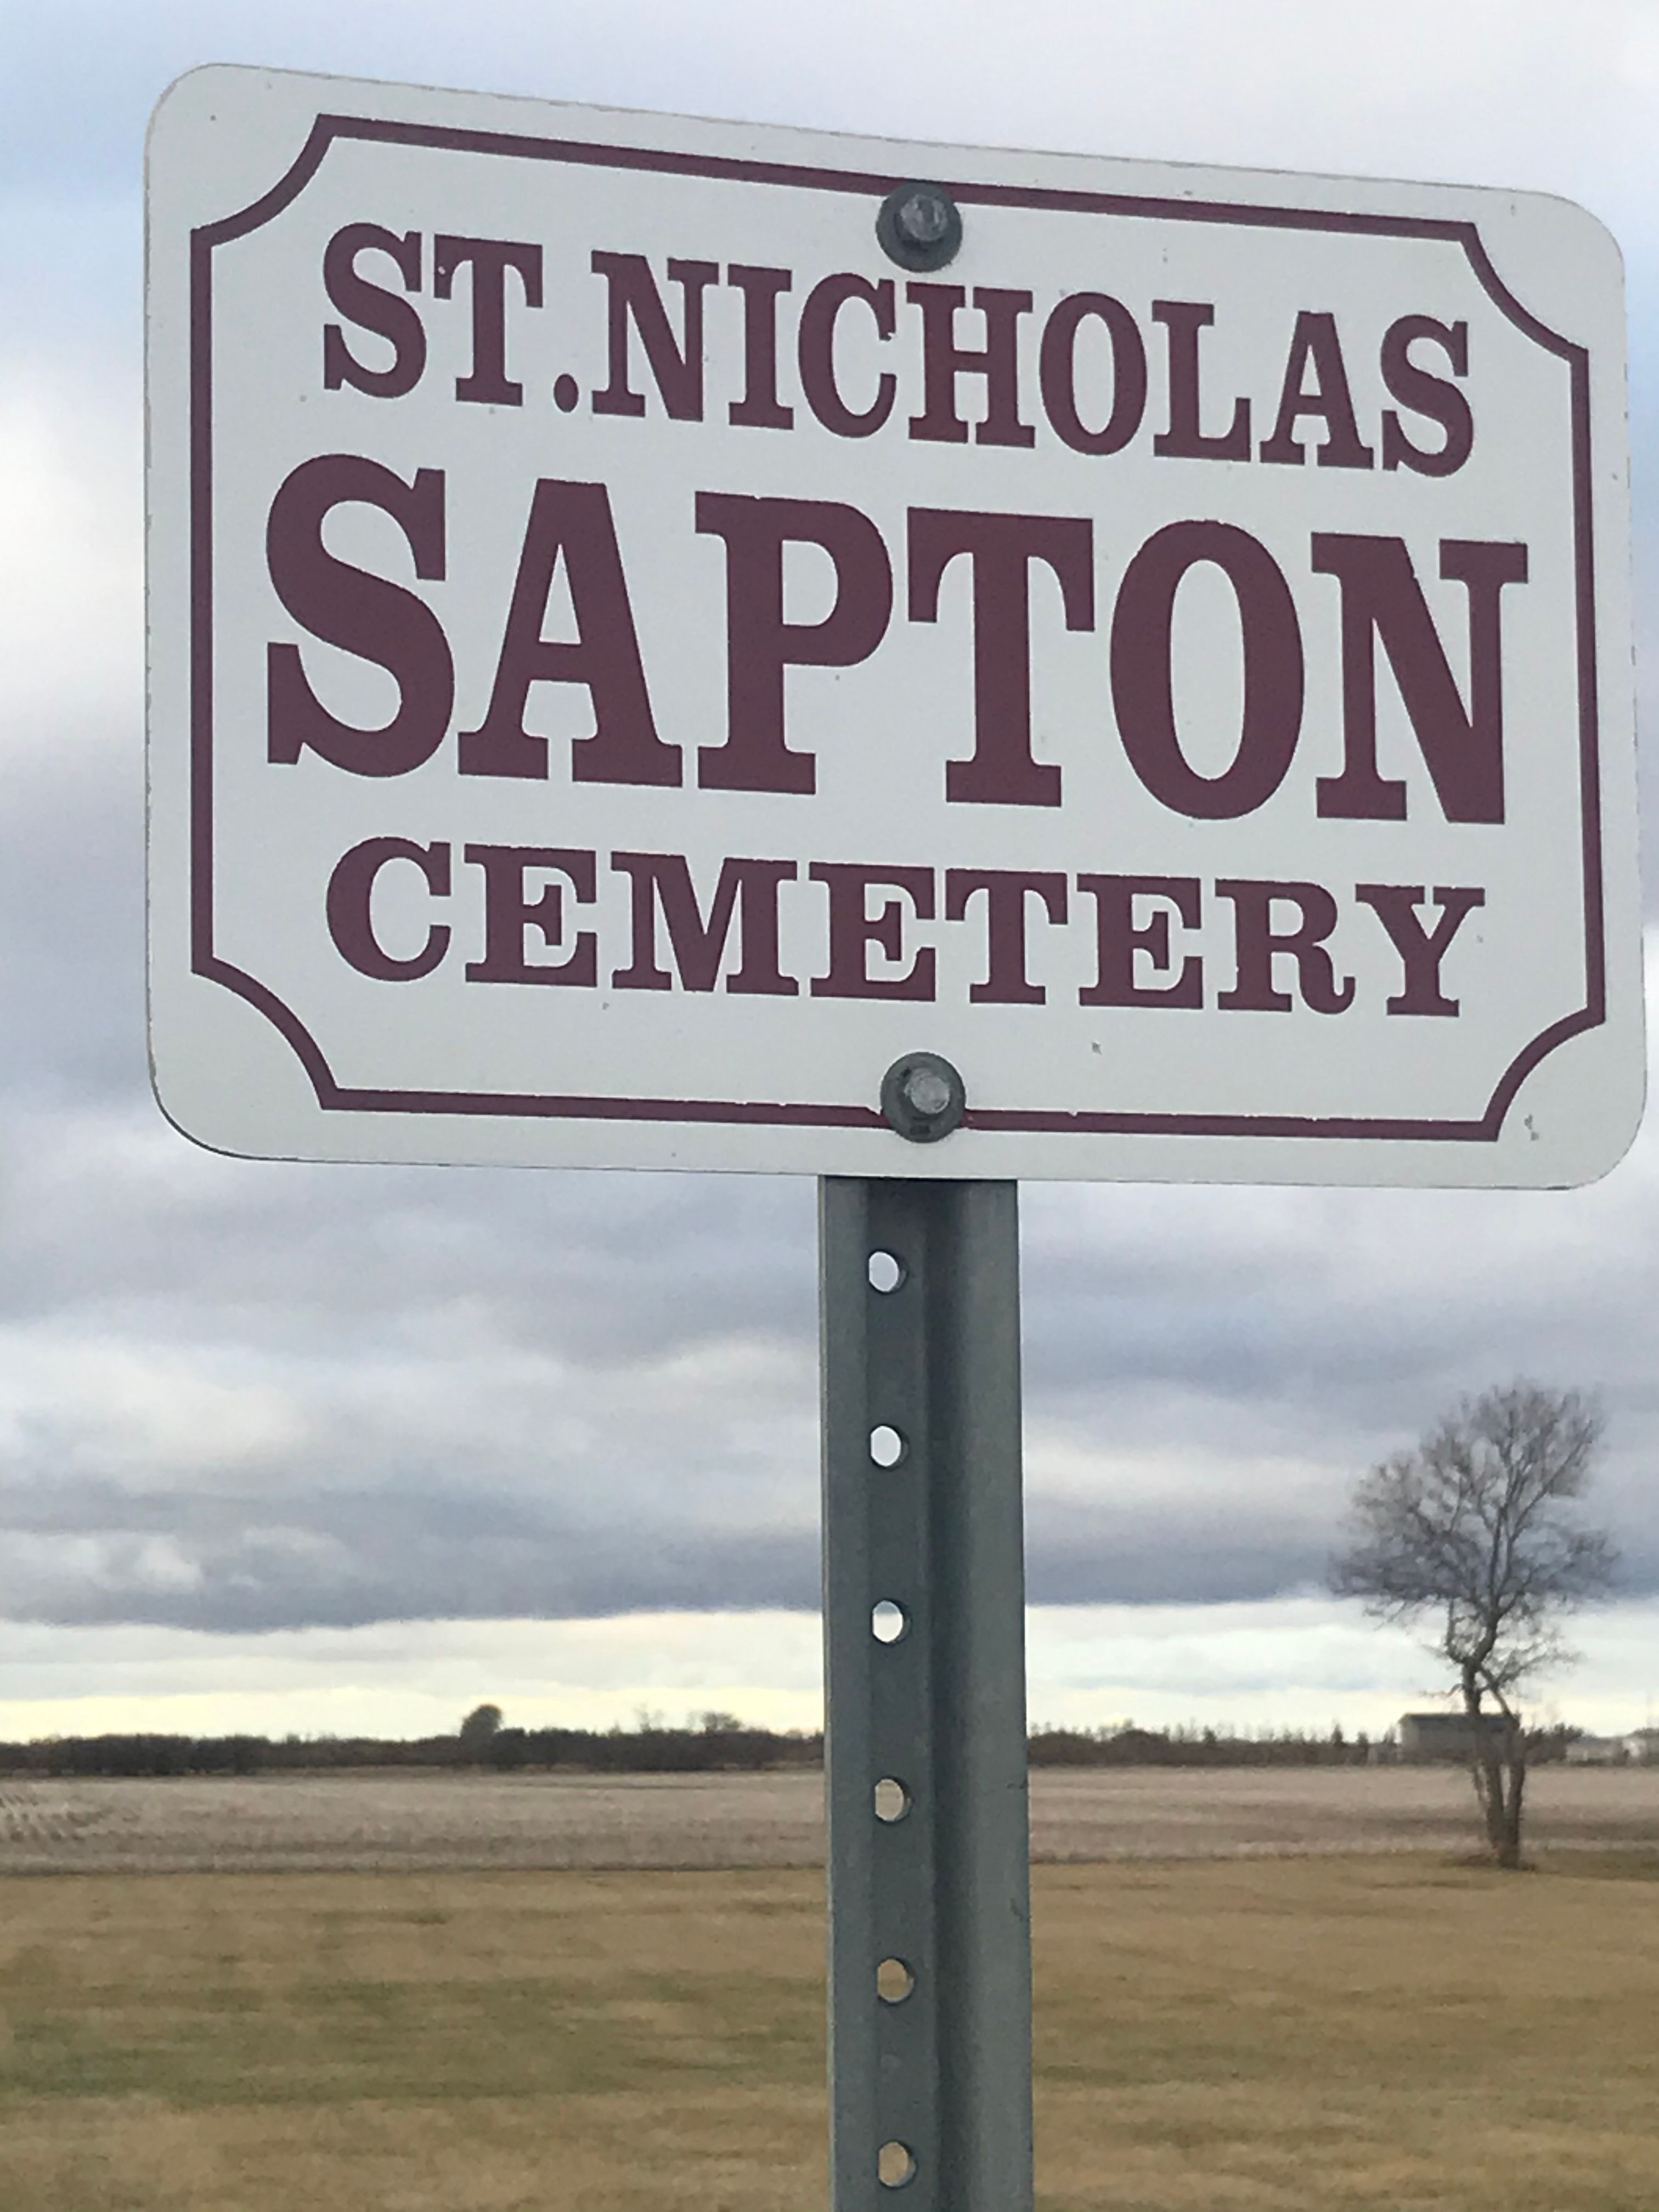 Saint Nicholas Sapton Cemetery